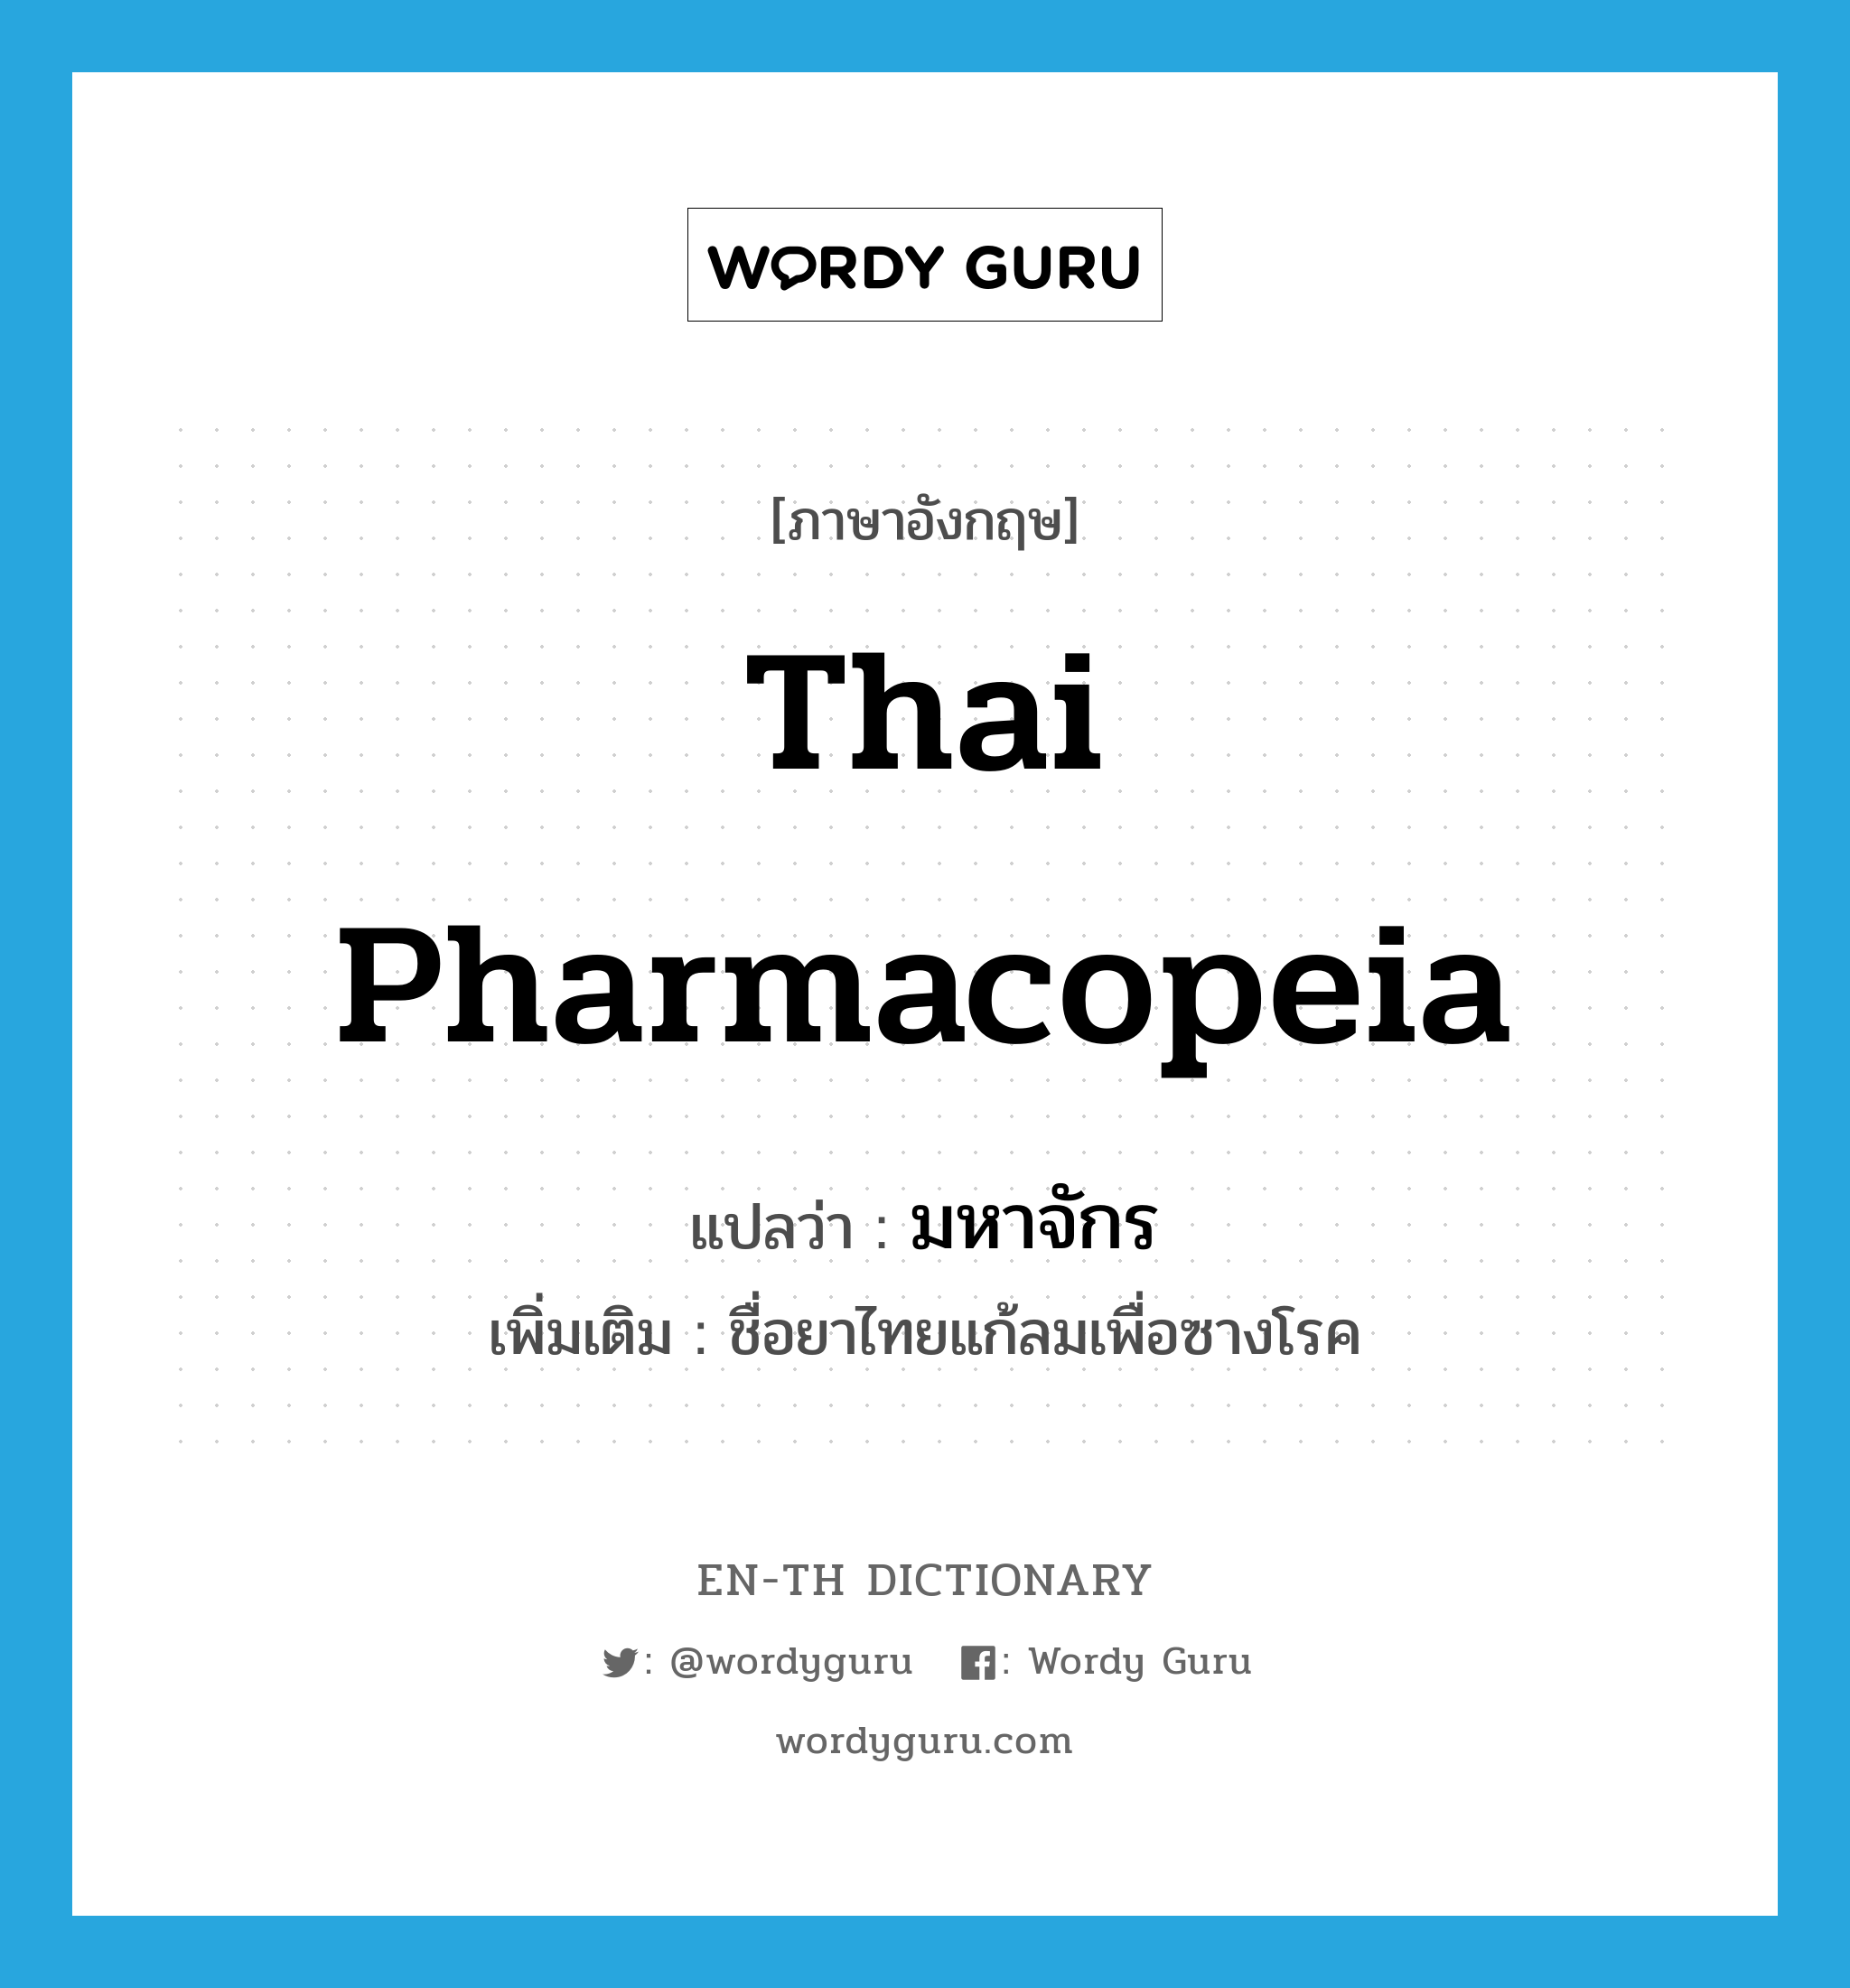 Thai pharmacopeia แปลว่า?, คำศัพท์ภาษาอังกฤษ Thai pharmacopeia แปลว่า มหาจักร ประเภท N เพิ่มเติม ชื่อยาไทยแก้ลมเพื่อซางโรค หมวด N